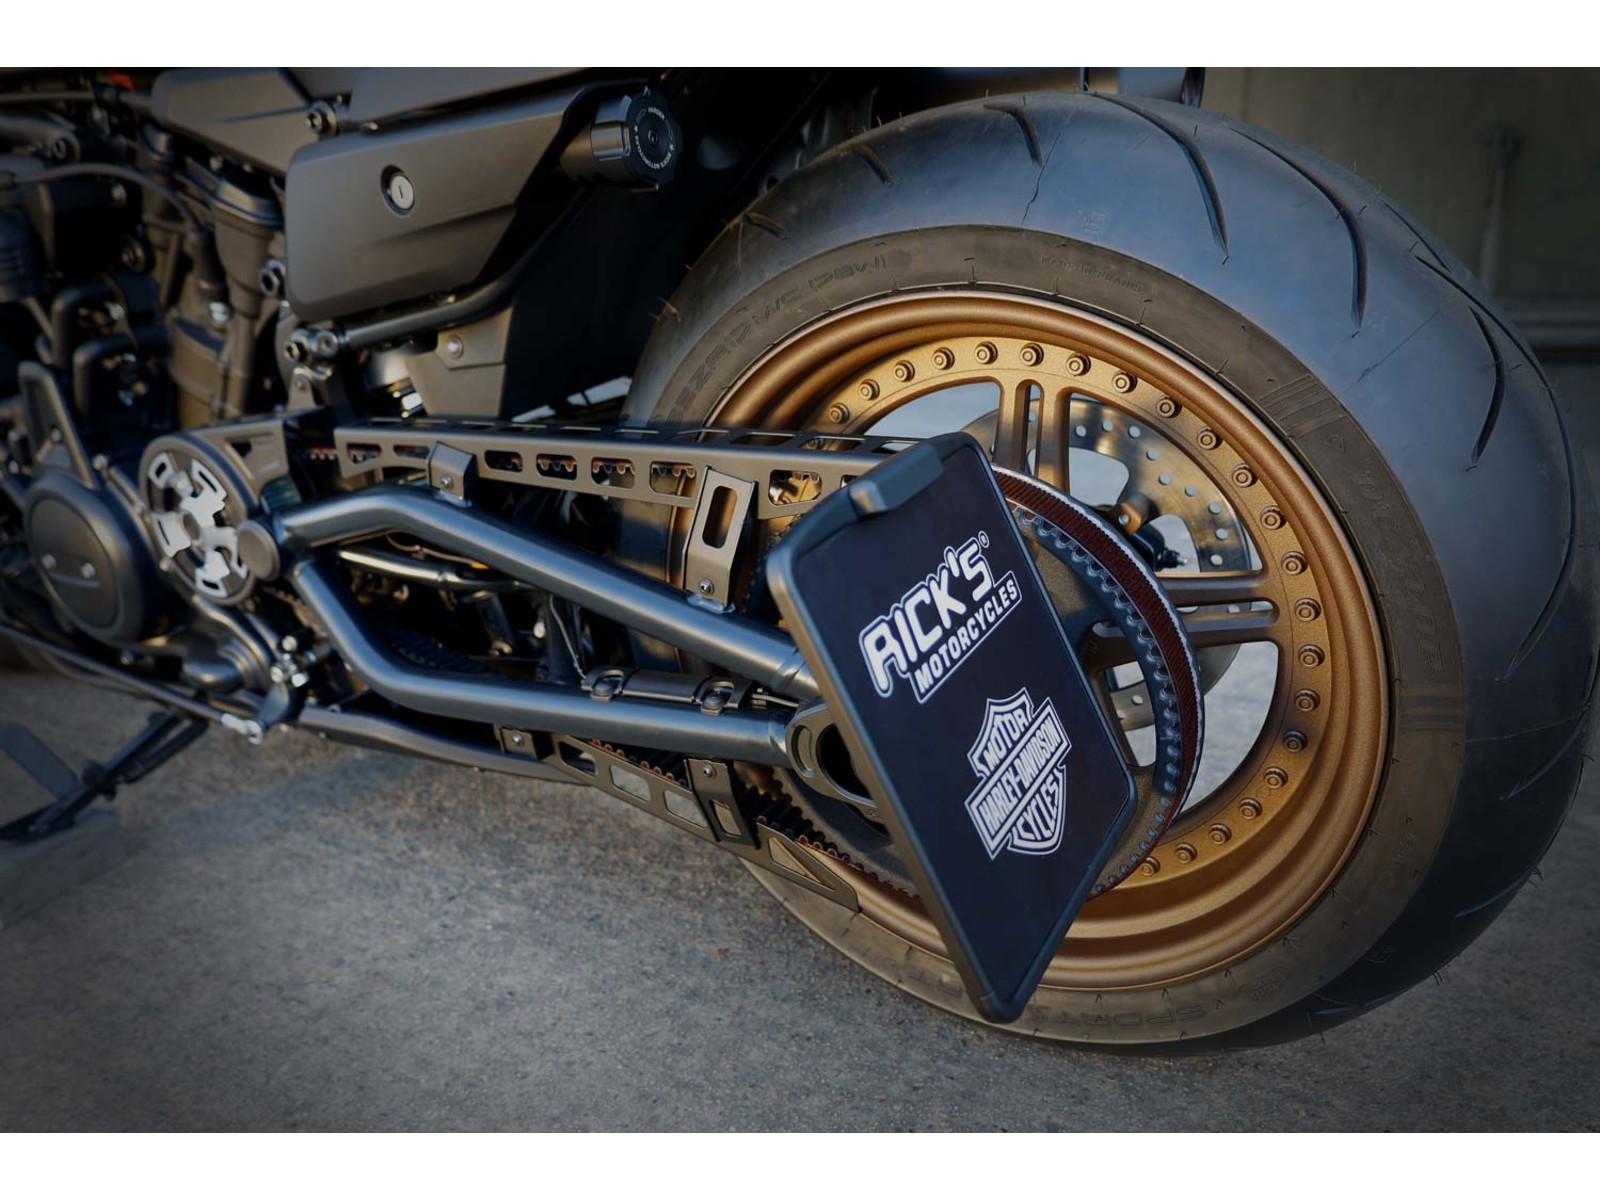 Kit de support de plaque d'immatriculation pour Harley Sportster S, queue  de moto, feu de stop LED, clignotant, Kit d'élimination des ailes -  AliExpress